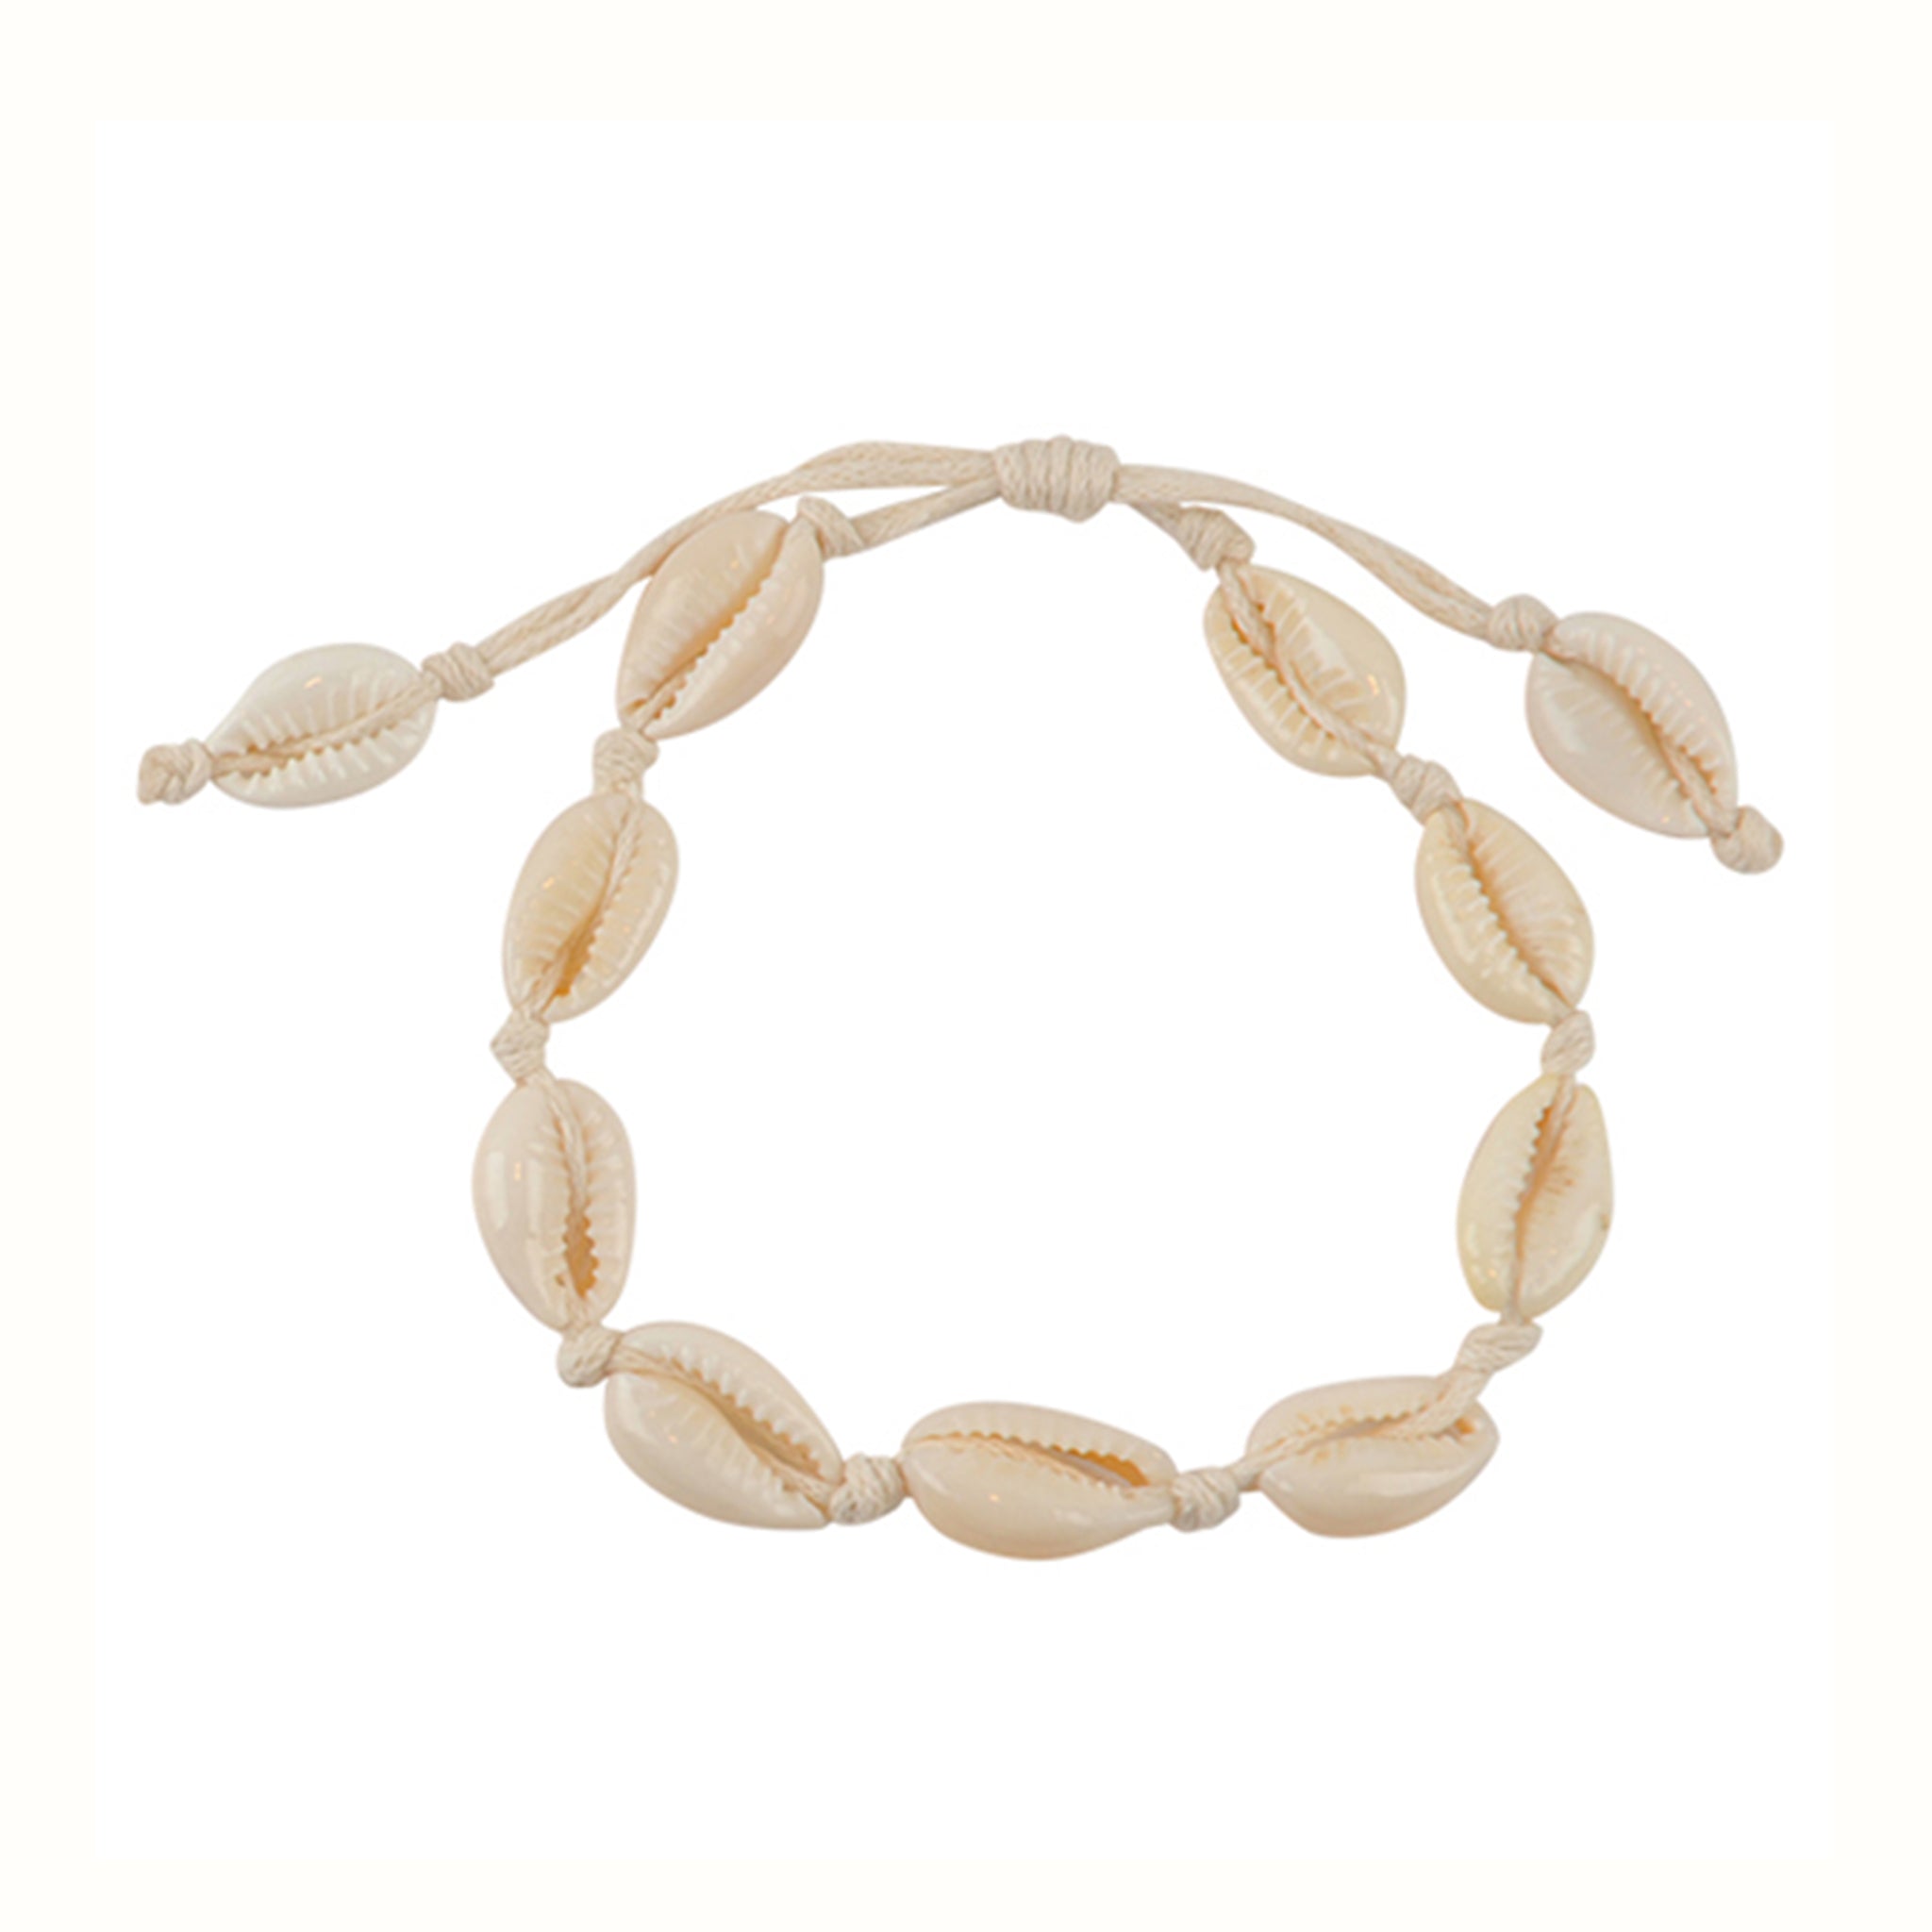 Gold Cowrie Shell Bracelet, Glass Eyes & White Jade Chips Beads, Boho